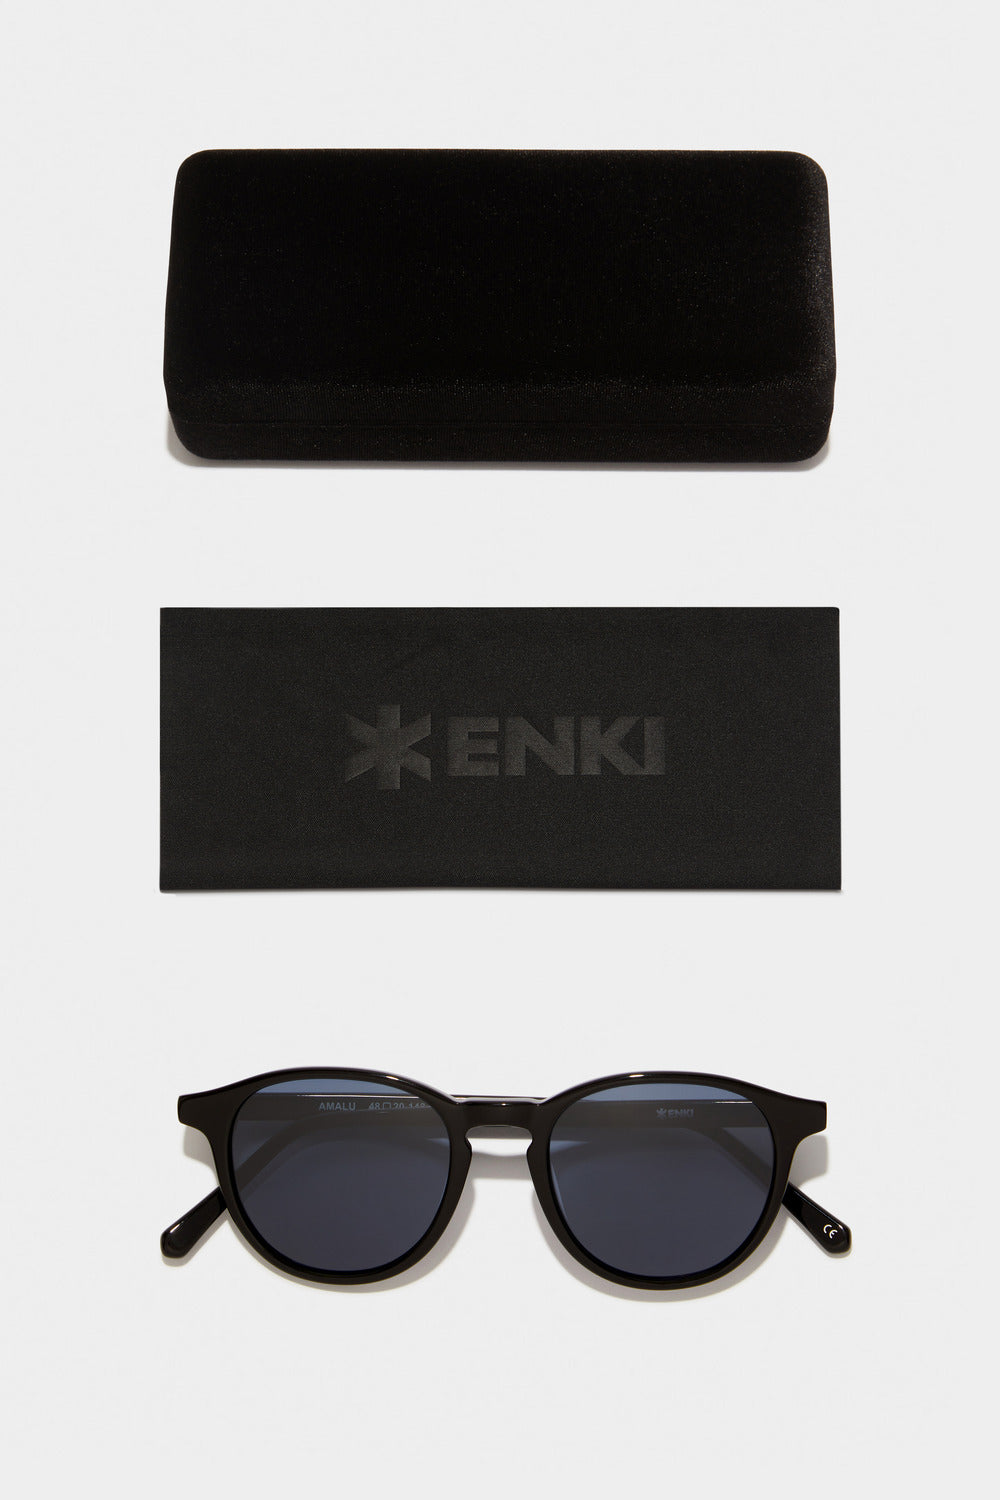 www.enkieyewear.com Amalu Men’s and Women’s Sunglasses